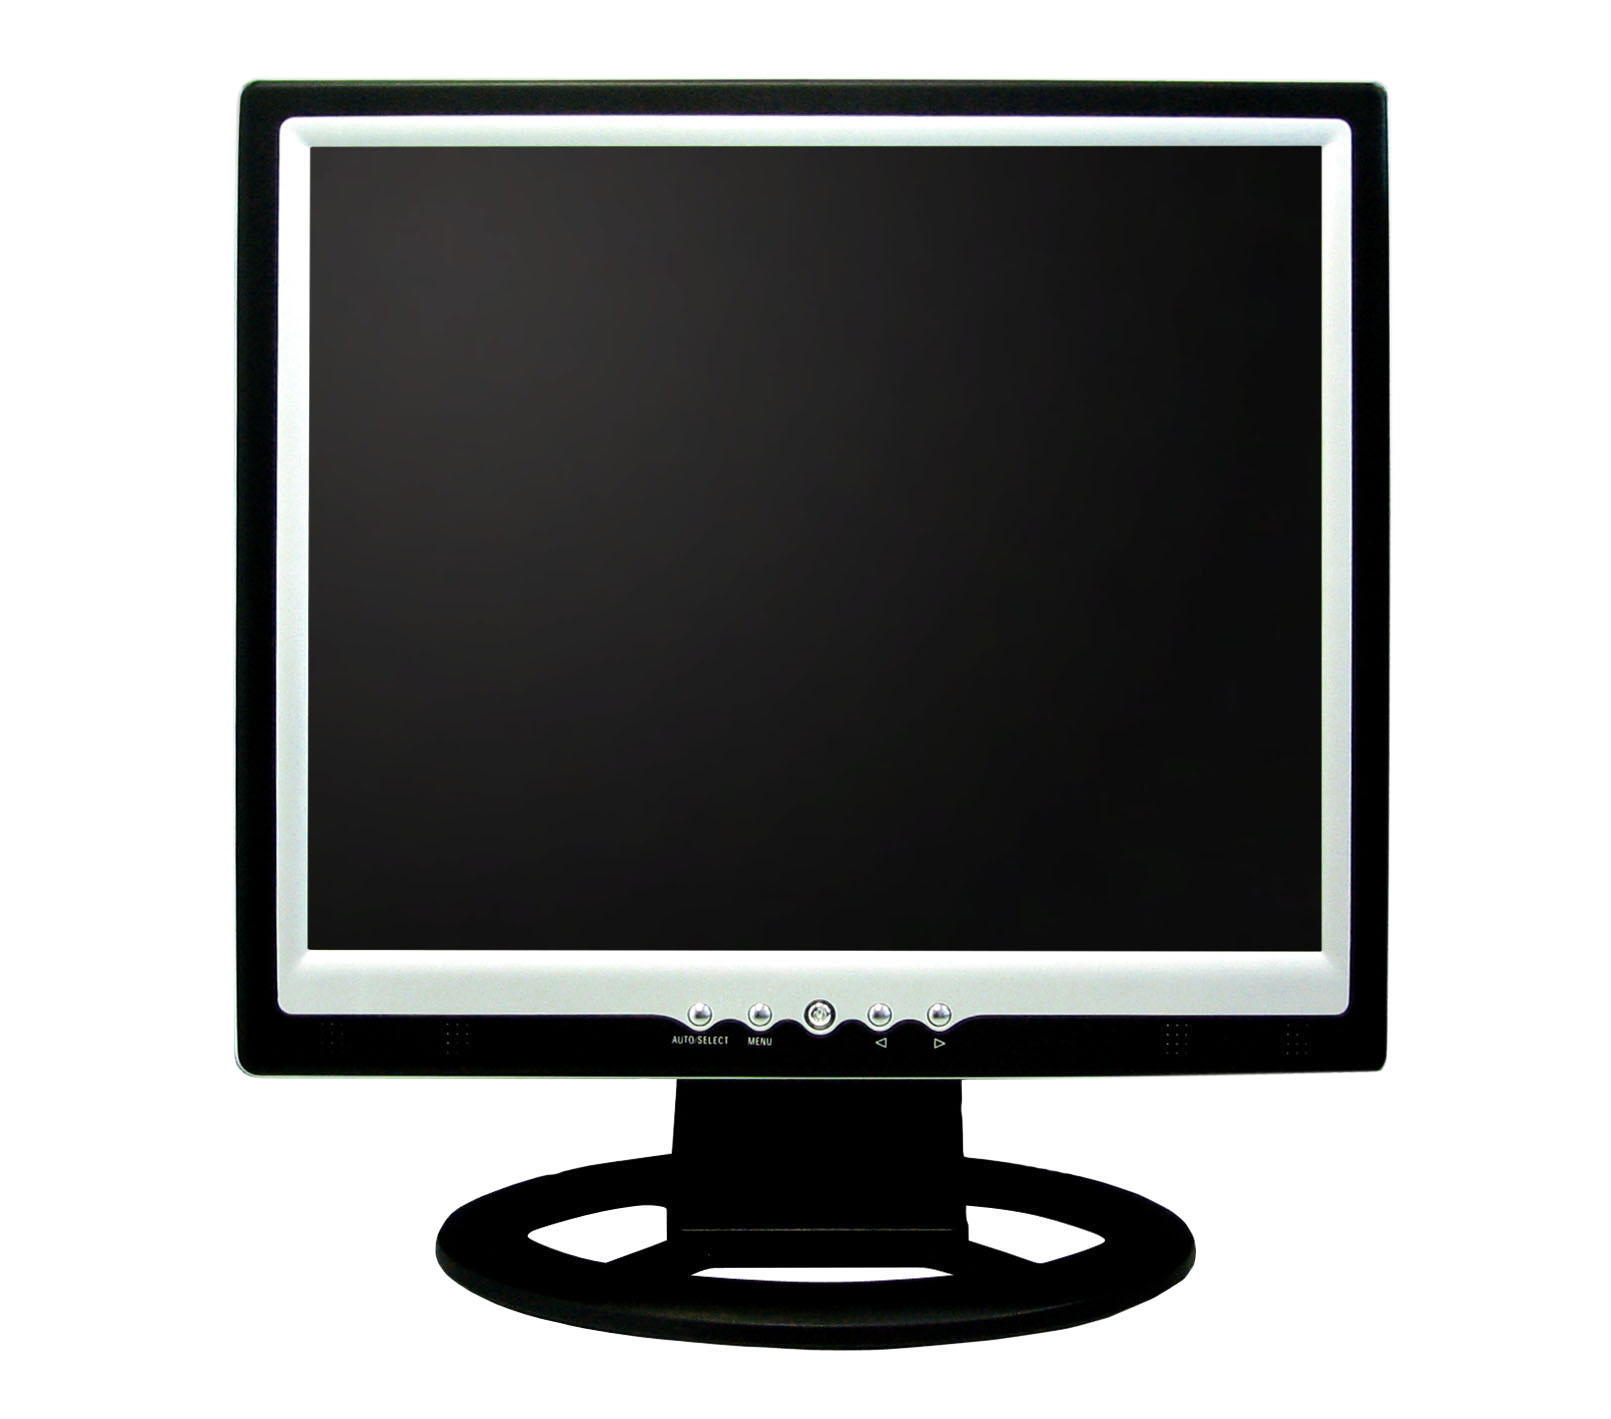  15 LCD Monitor (15 ЖК-монитор)